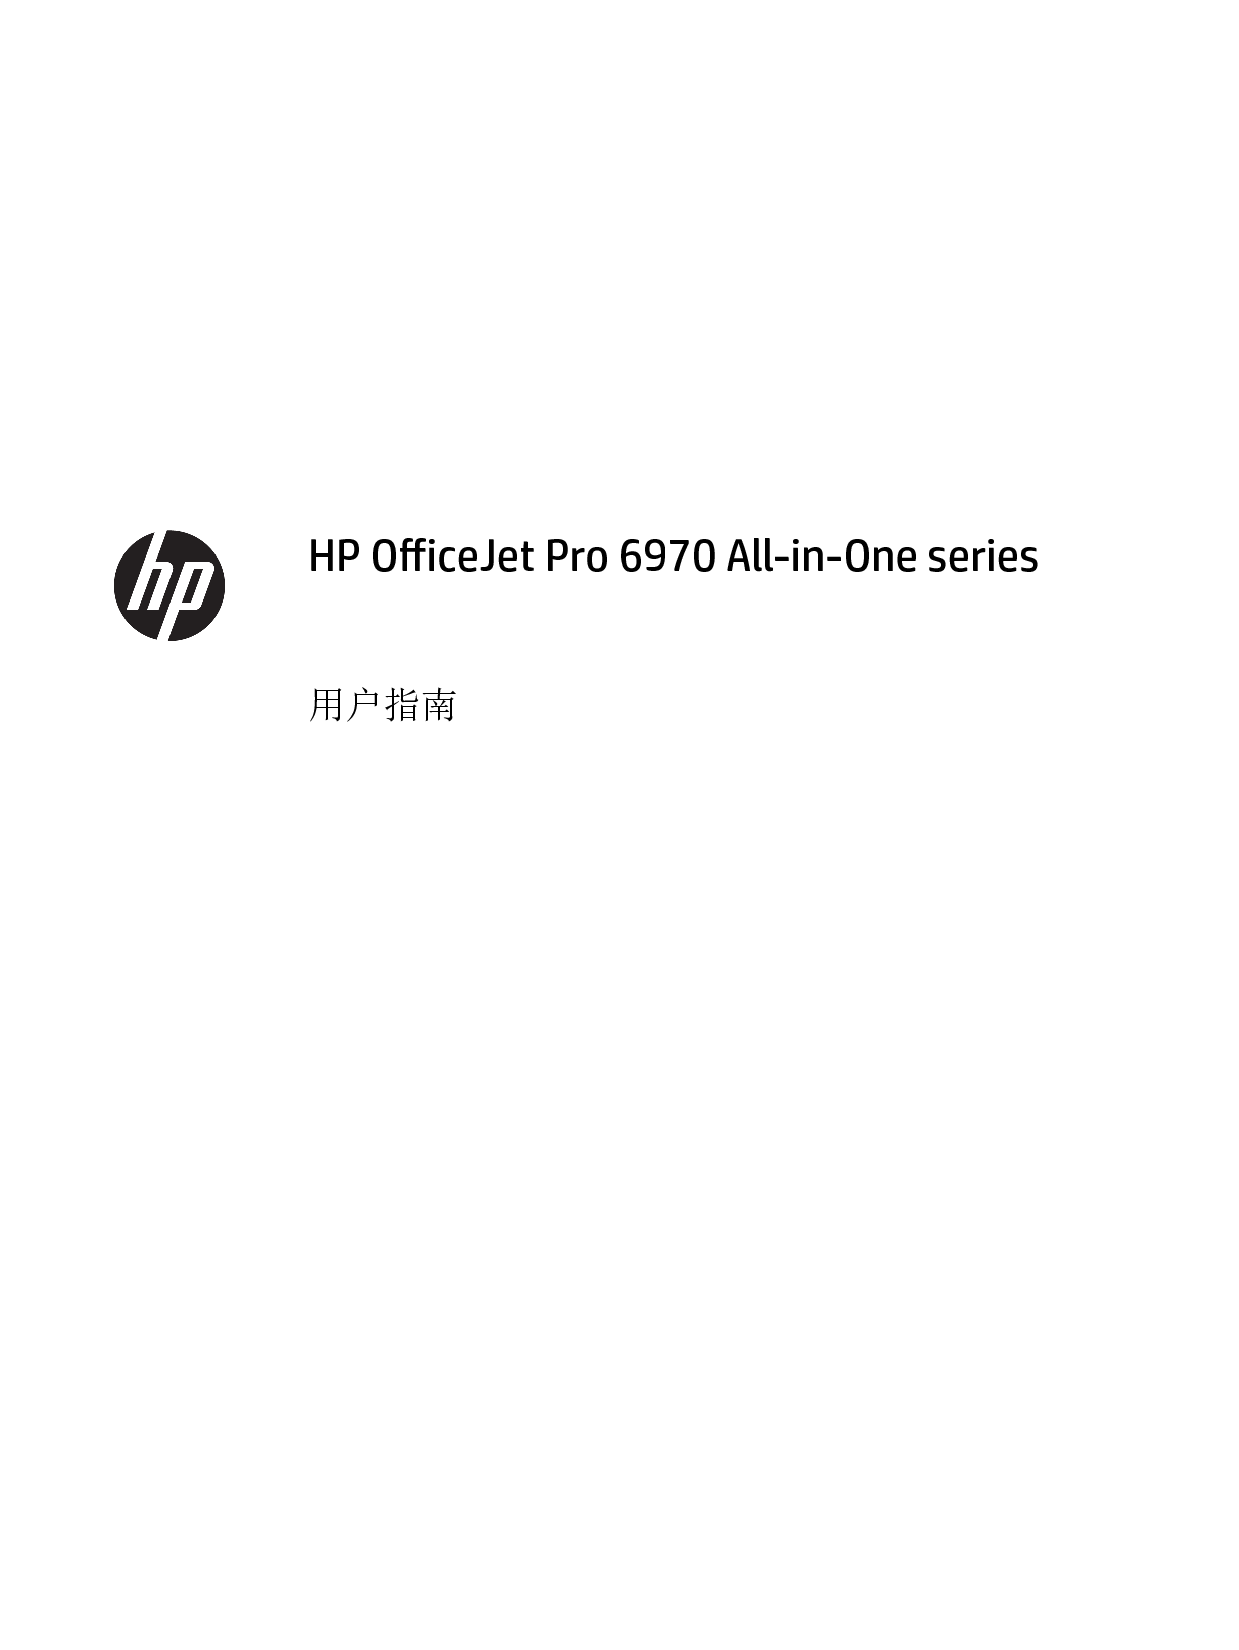 惠普 HP OfficeJet Pro 6970 用户指南 第1页